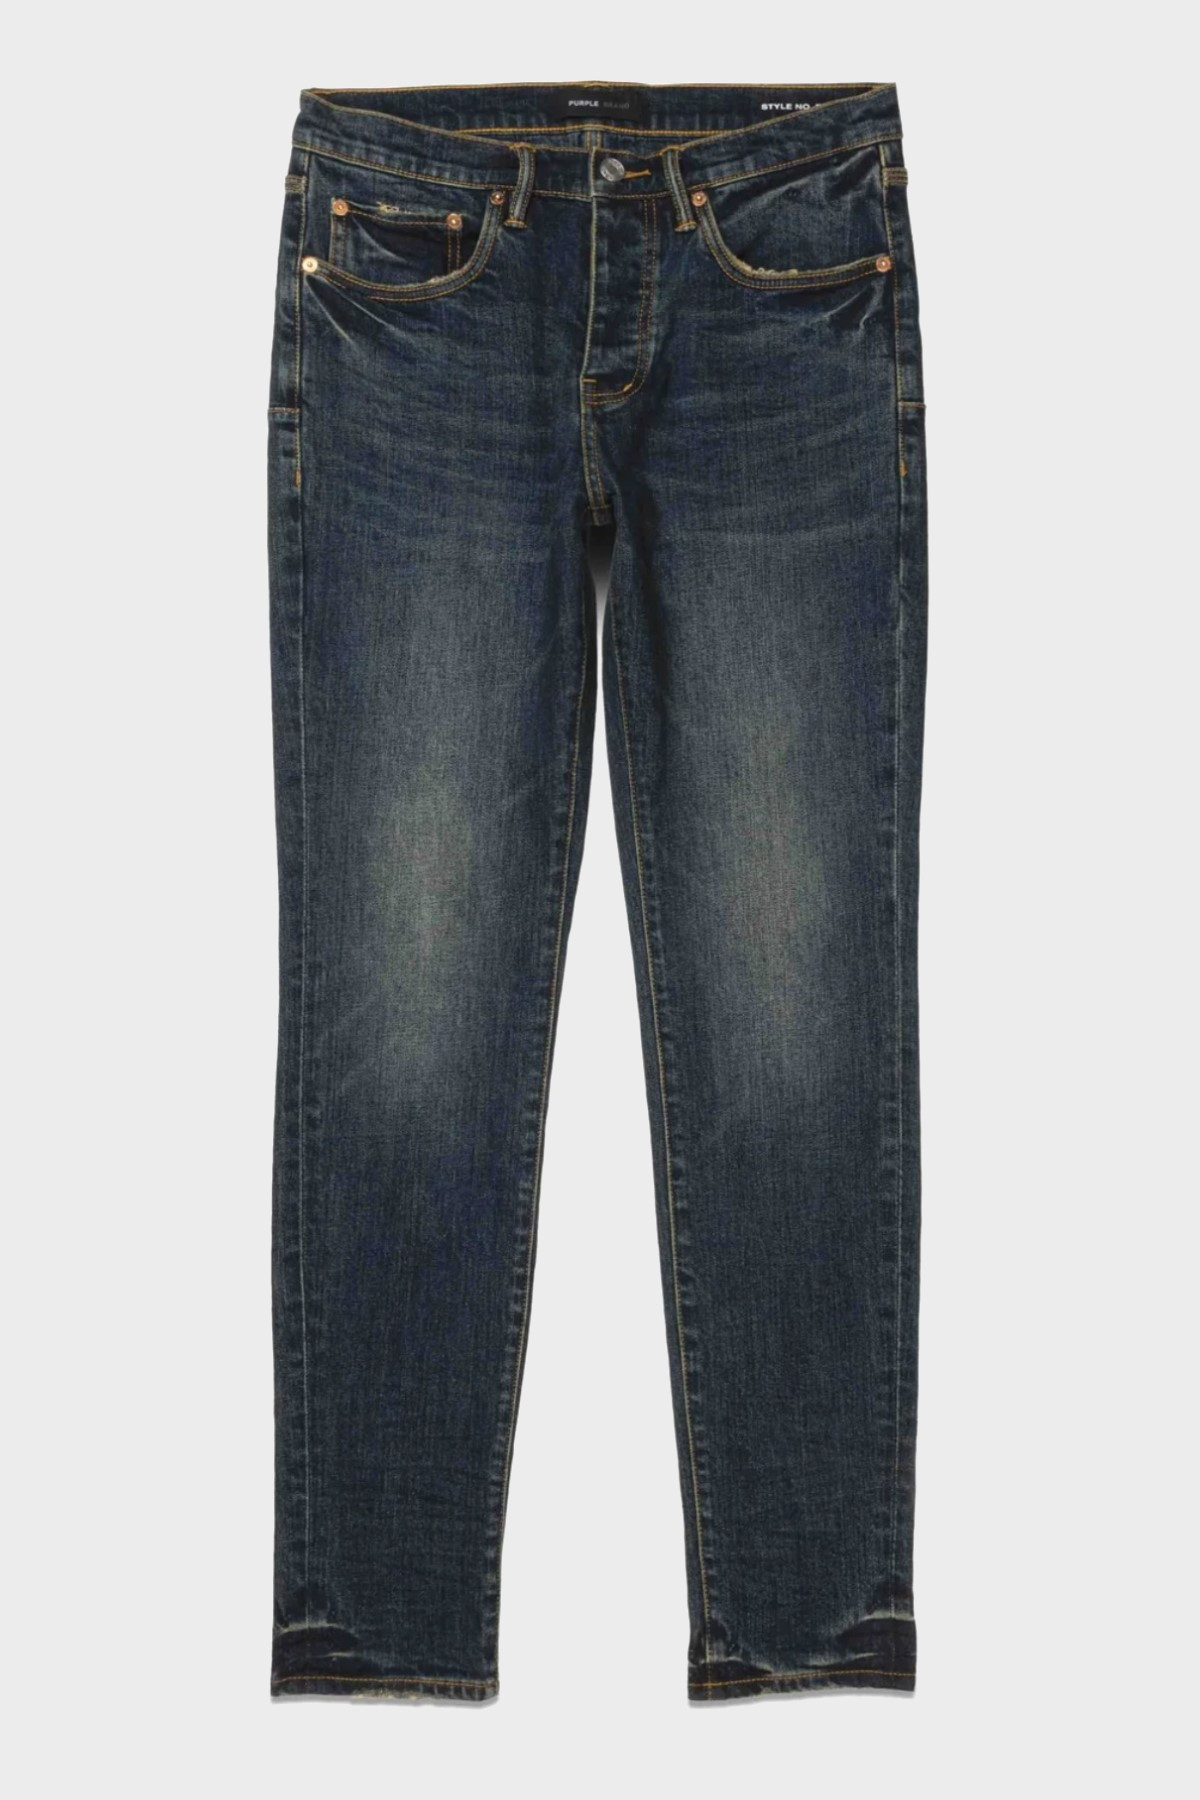 PURPLE-BRAND Jeans P001 in Dark Indigo